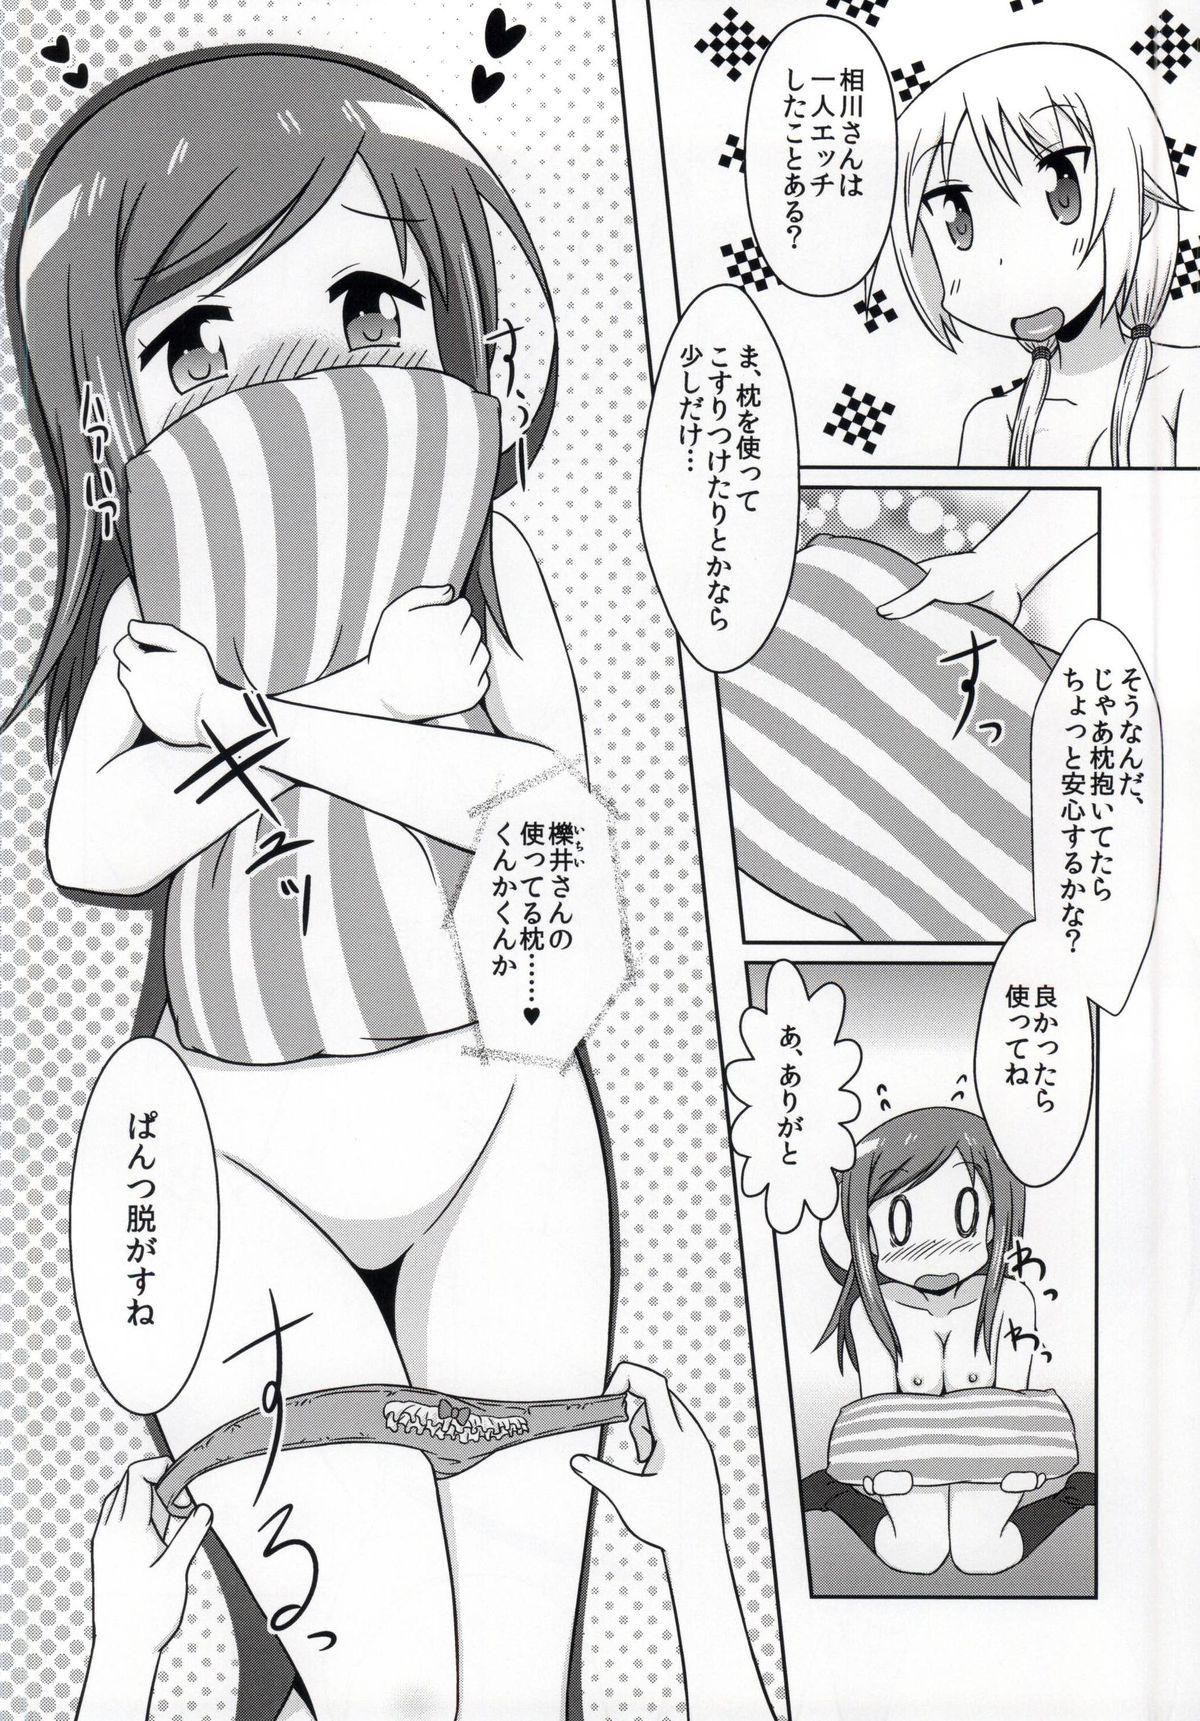 Vaginal Yuyushiki Koto wa Subarashiki kana 3 - Yuyushiki Roludo - Page 11